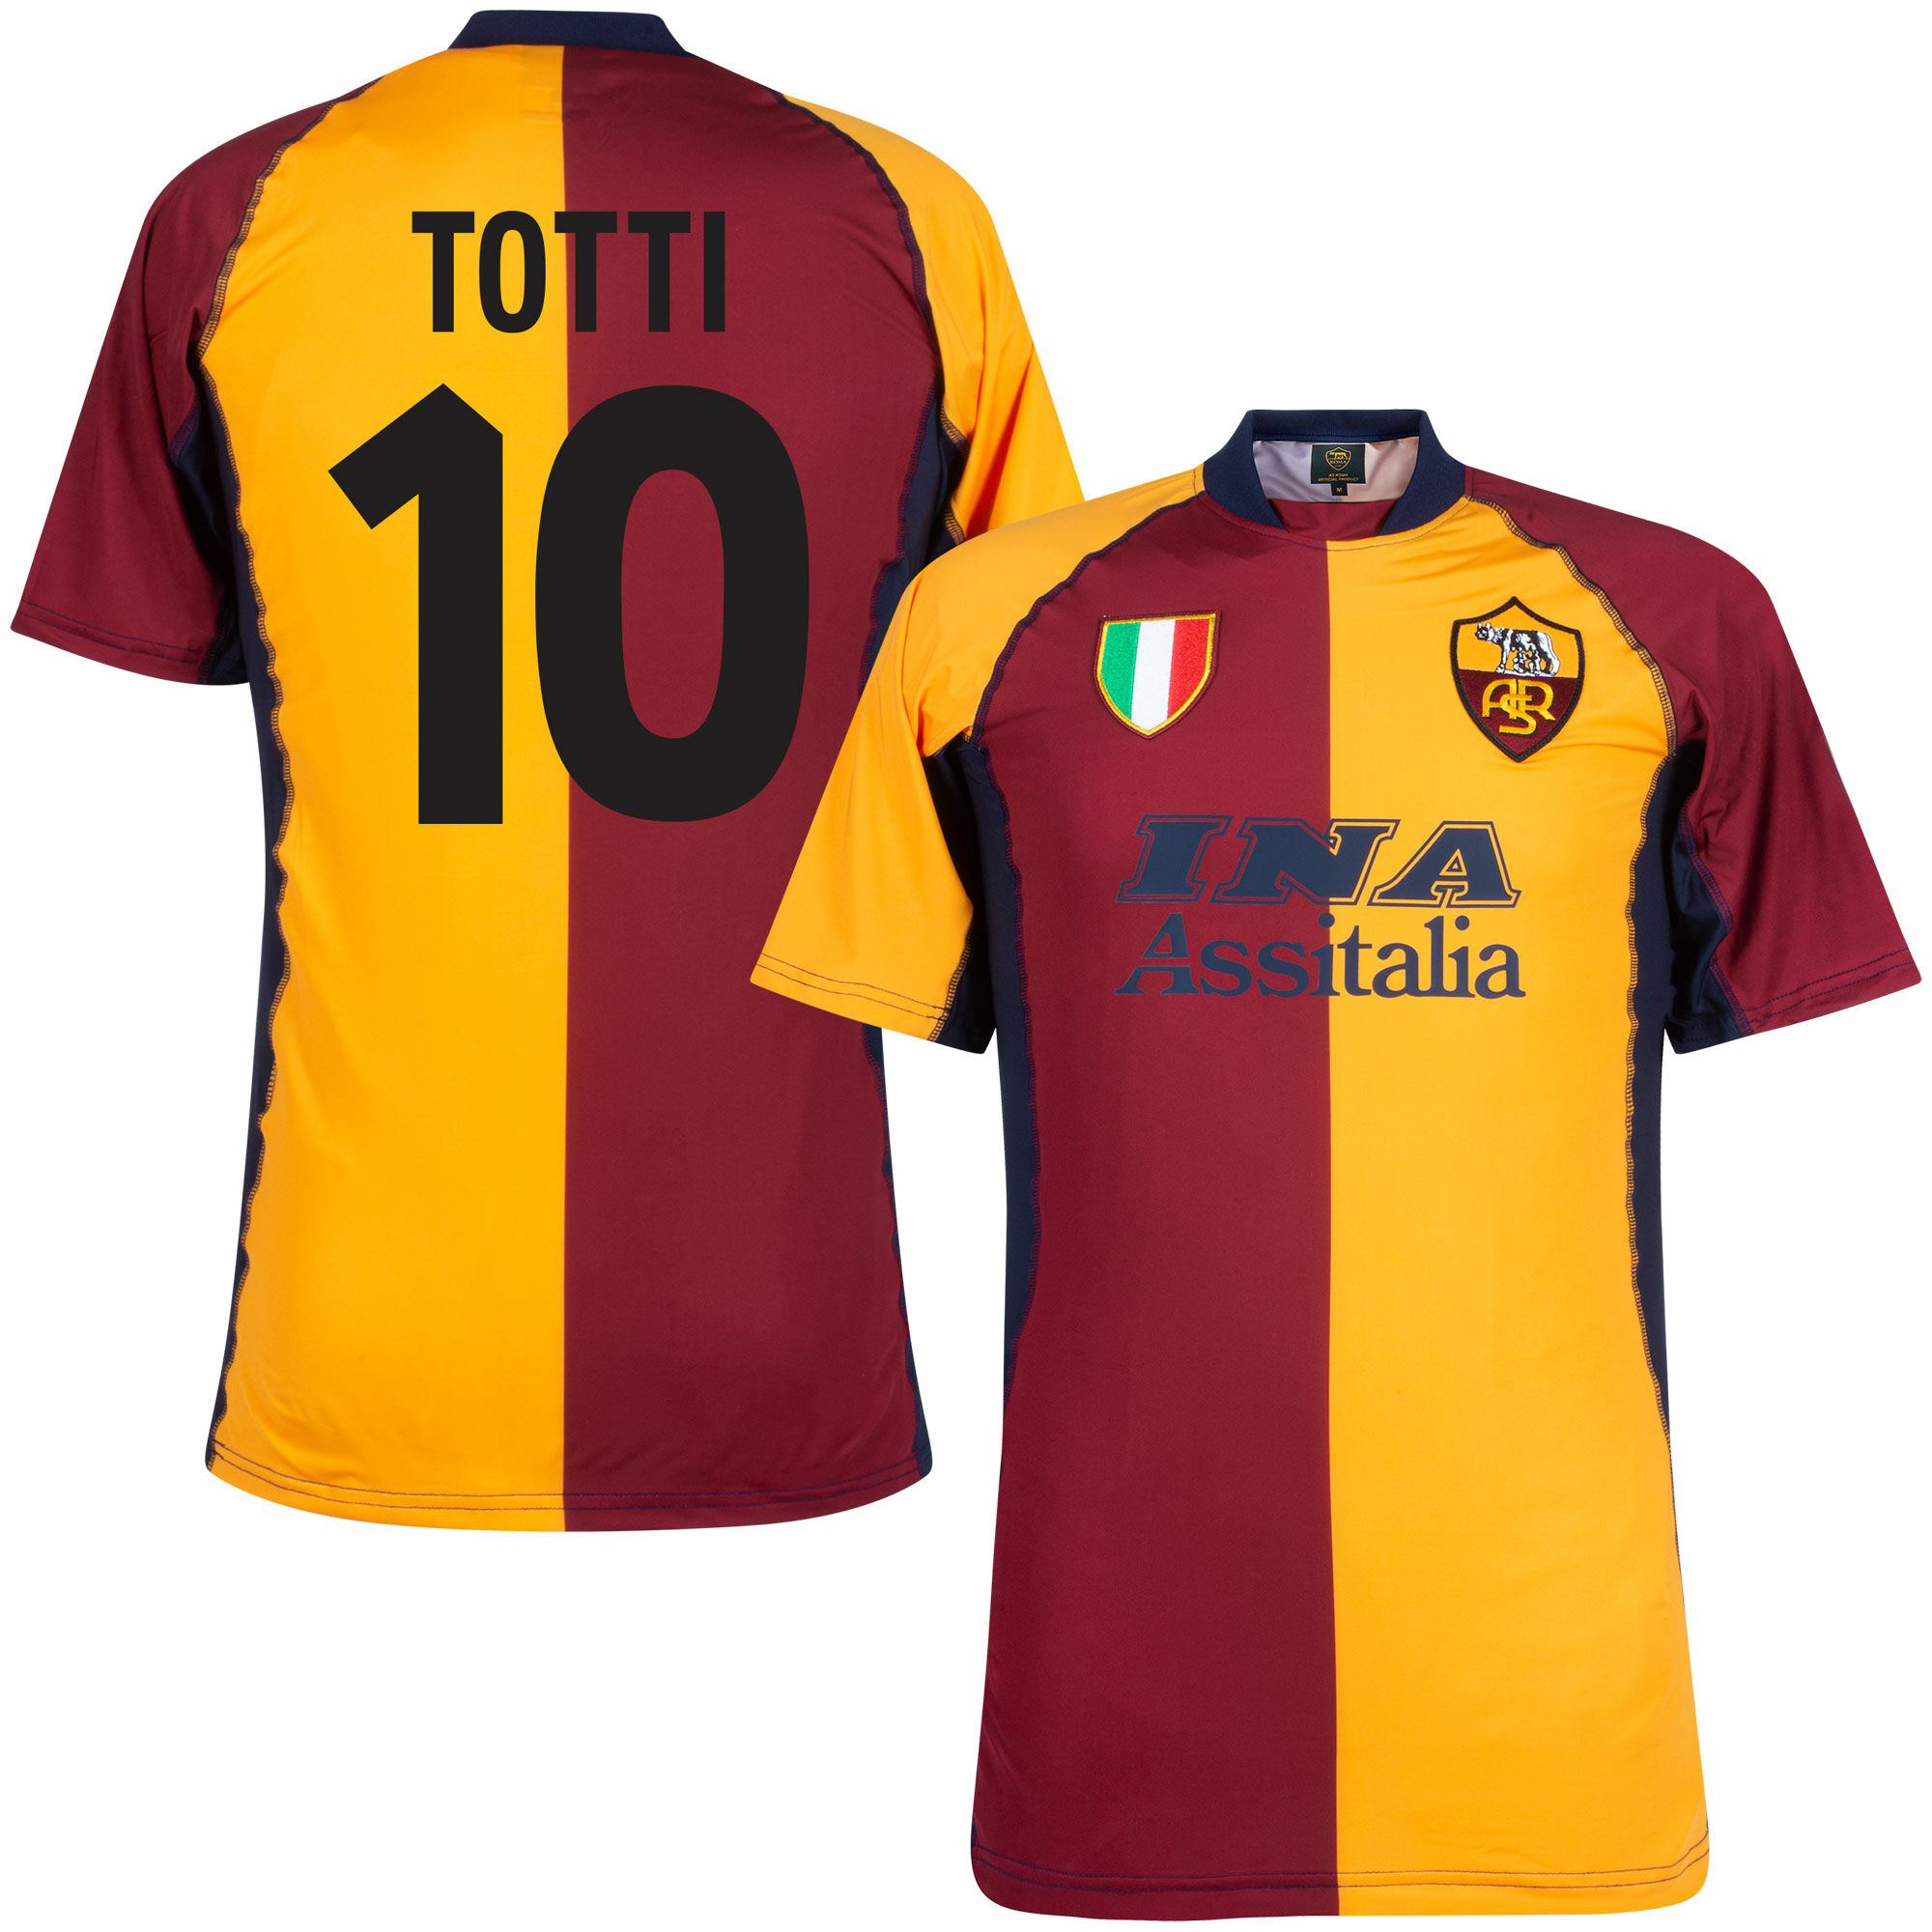 AS Řím - Dres fotbalový - fan potisk, červenooranžový, číslo 10, domácí, Francesco Totti, sezóna 2001/02, retrostyl